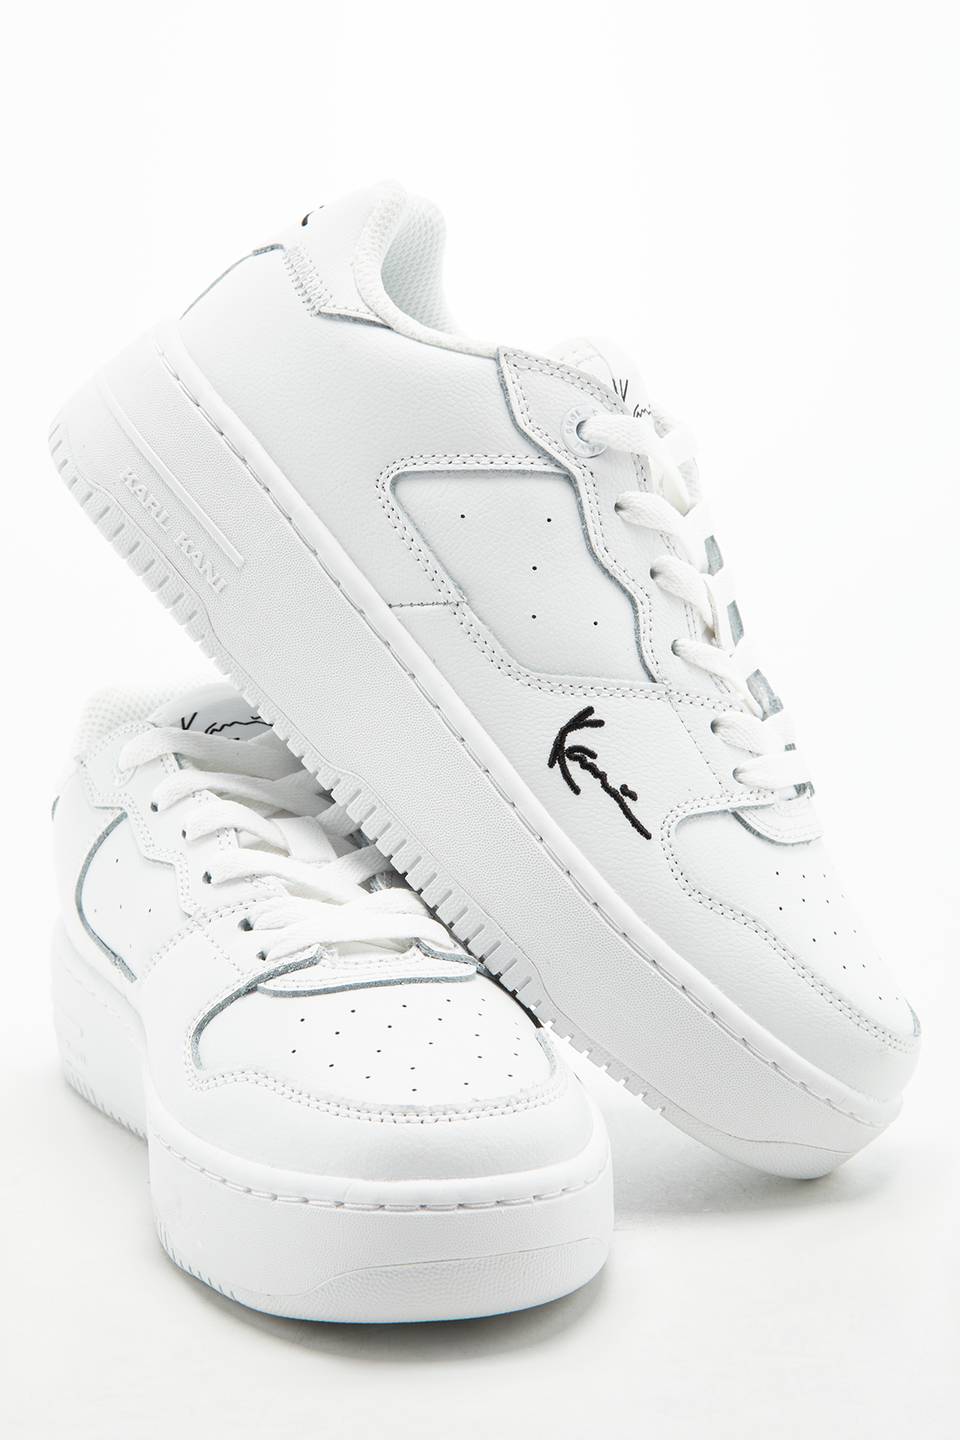 Sneakers Karl Kani 89 UP white/black 1180625